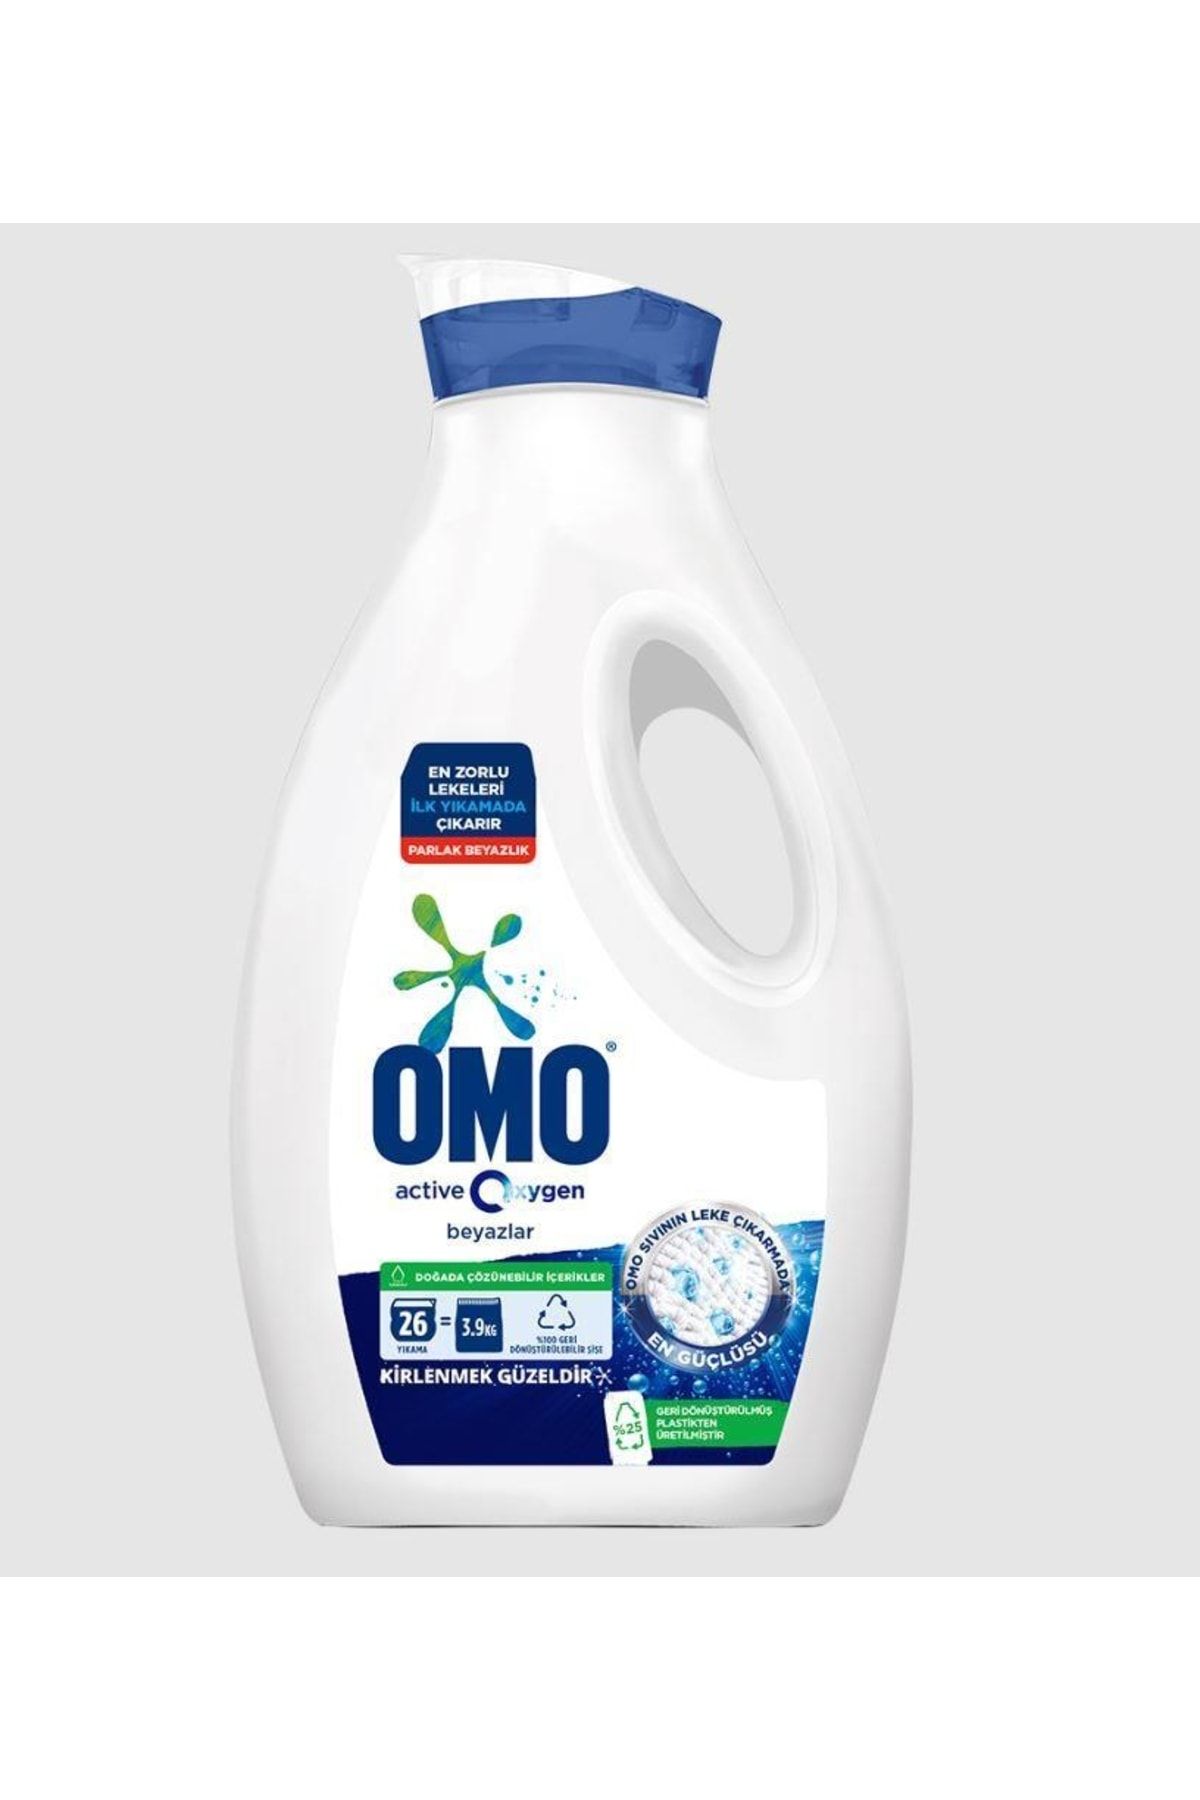 Omo Active Oxygen Sıvı Çamaşır Deterjanı Beyaz Için En Zorlu Lekeleri Ilk Yıkamada Çıkarır 1690 Ml